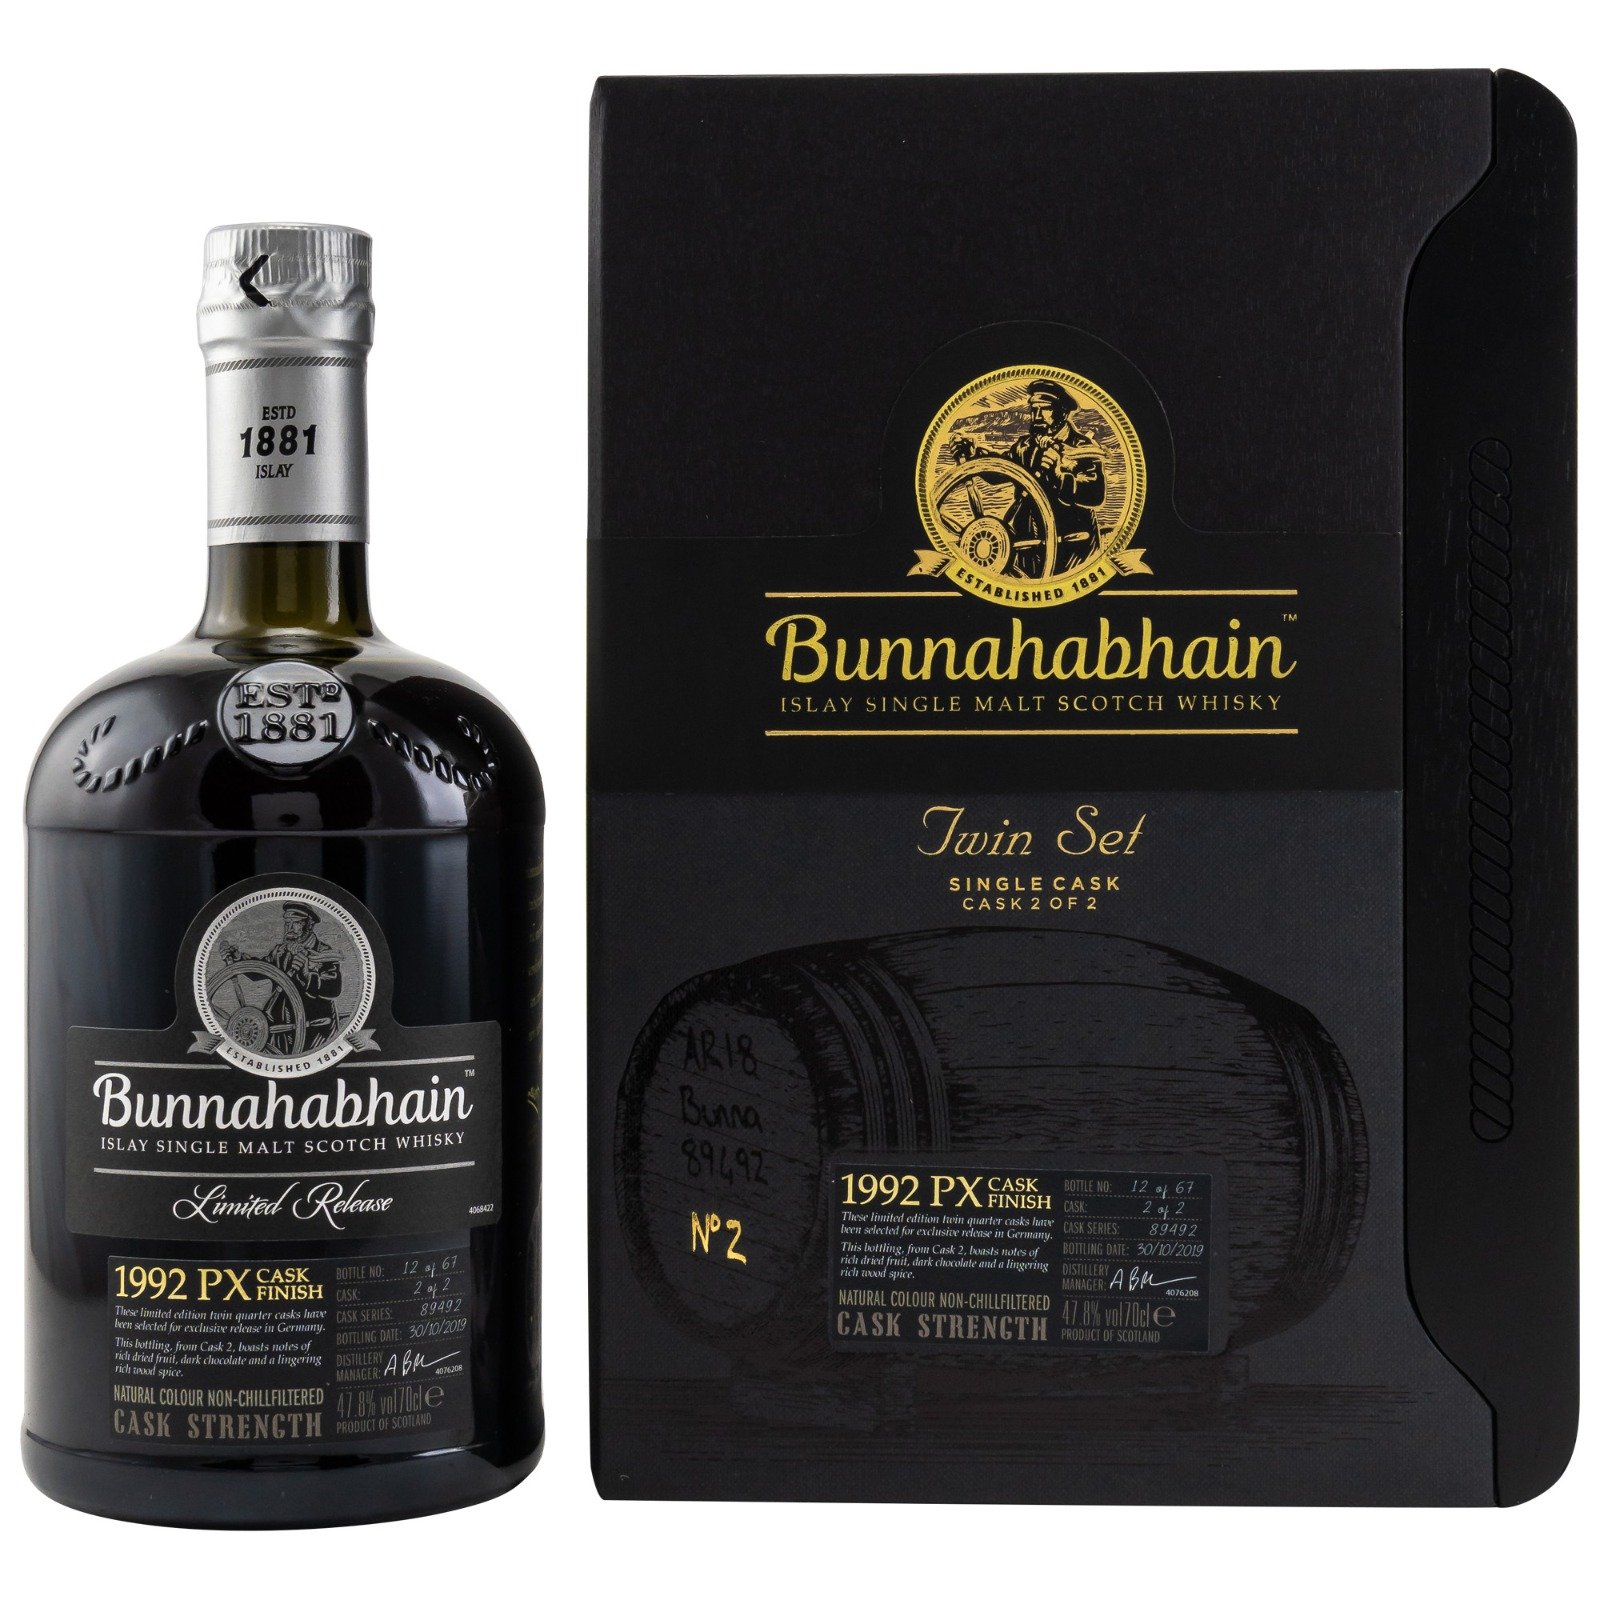 Bunnahabhain 1992 PX Quarter Cask #2 Twin Set Cask Strength Islay Single Malt Scotch Whisky